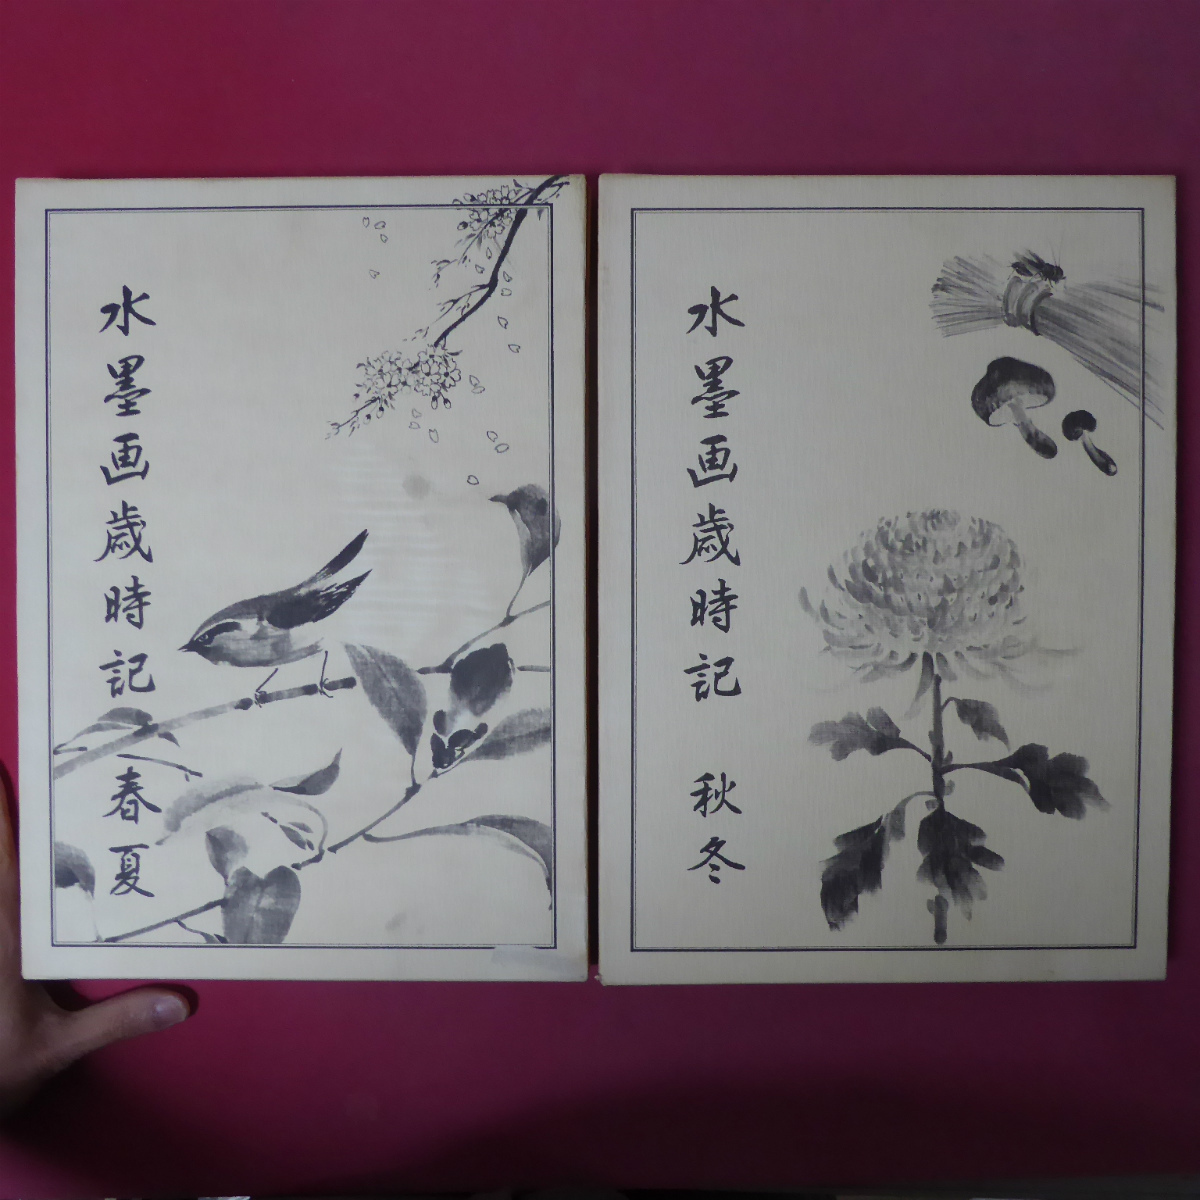 बड़े आकार की पुस्तक [सुमी-ई पेंटिंग पंचांग: वसंत/ग्रीष्म संस्करण और शरद/शीतकालीन संस्करण, दो पुस्तकों का सेट/जापान कला शिक्षा केंद्र, चित्रांकन: ऐमिया सेयुन] @5, कला, मनोरंजन, चित्रकारी, तकनीक पुस्तक